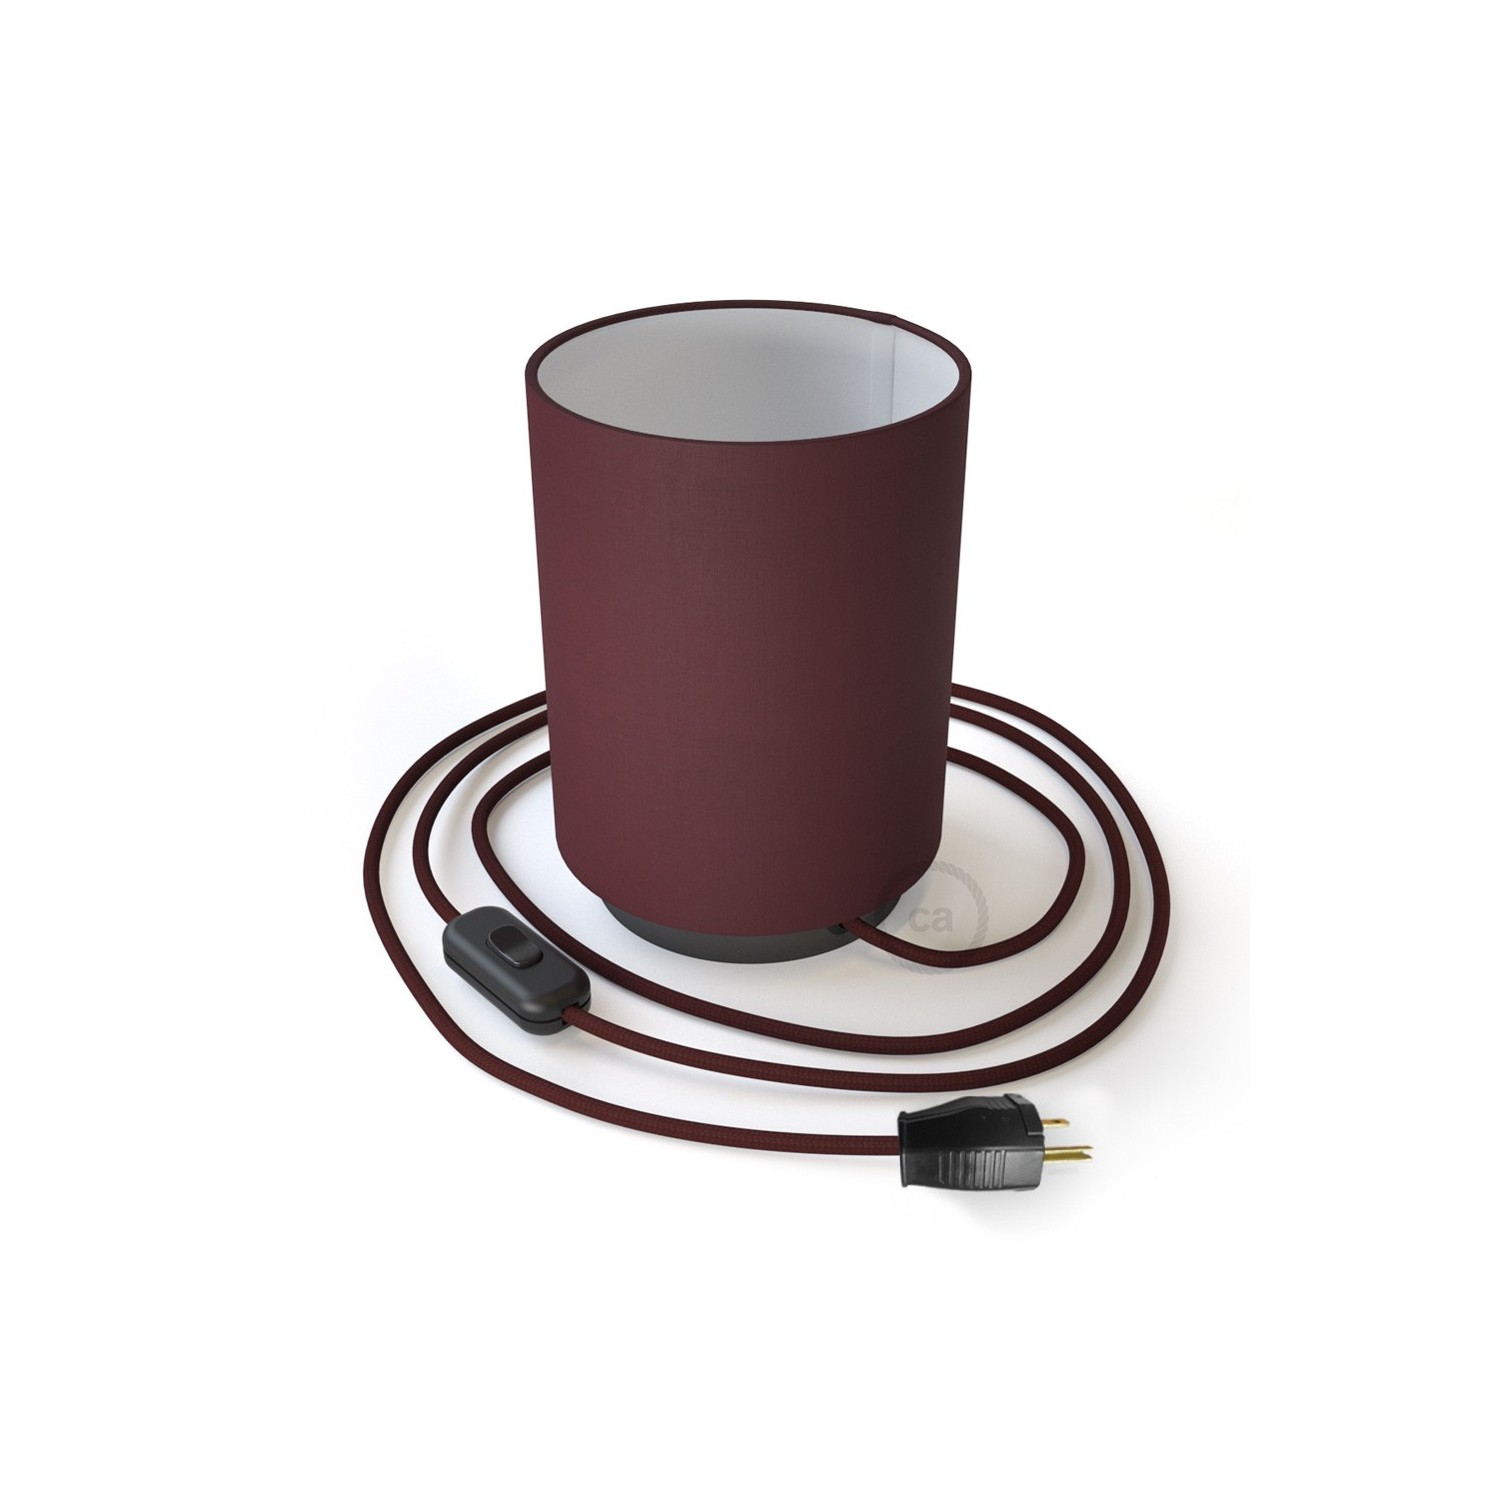 Posaluce de metal con pantalla de cilindro Bordeaux, completa con cable textil, interruptor y clavija